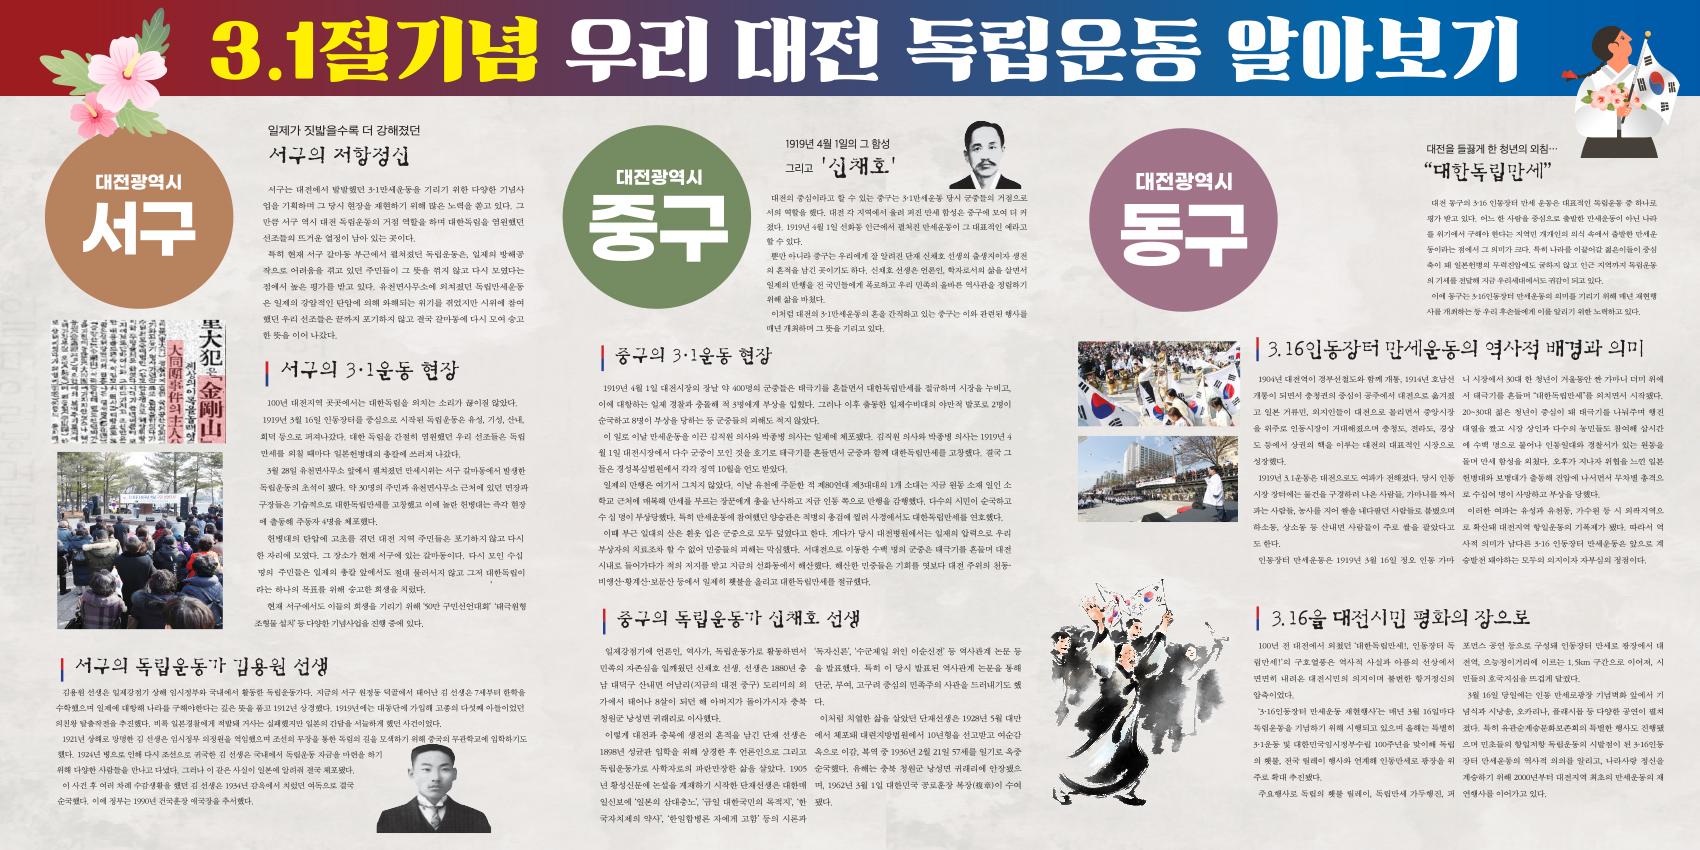 대전의 3.1운동 역사관